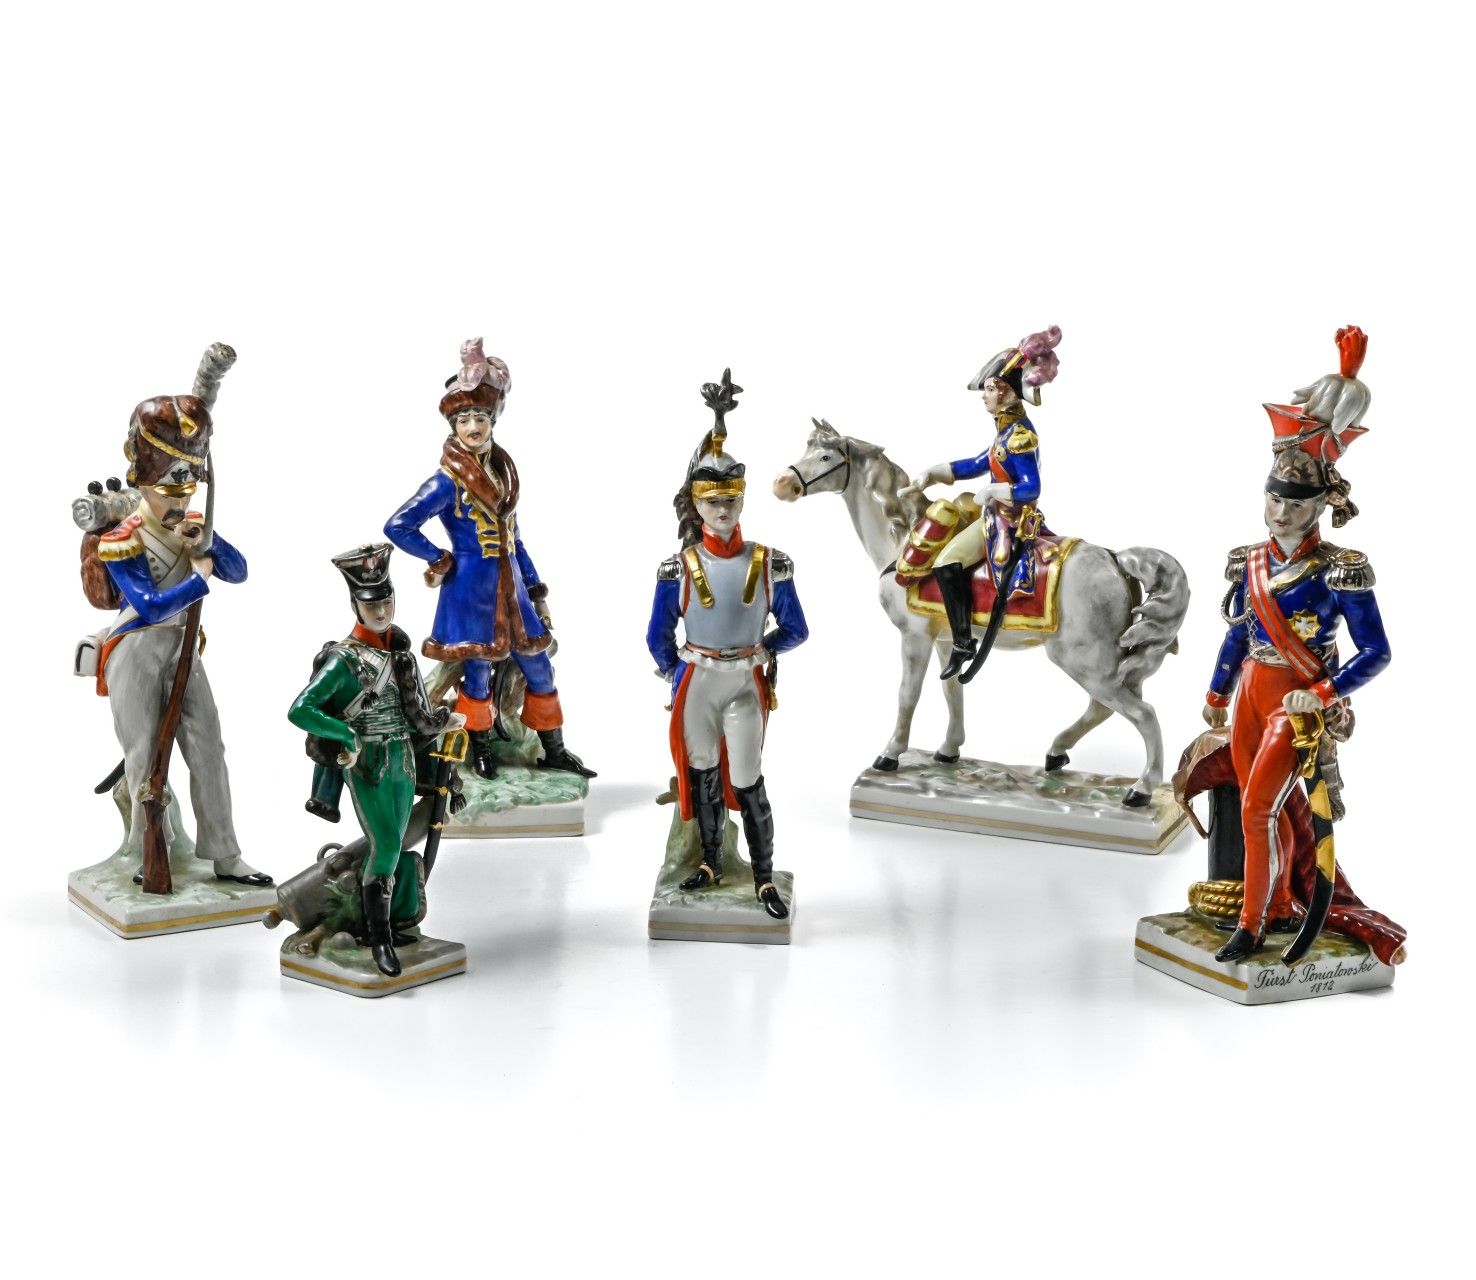 CAPODIMONTE CAPODIMONTE
Set von sechs historischen Figuren aus dem Kaiserreich

&hellip;